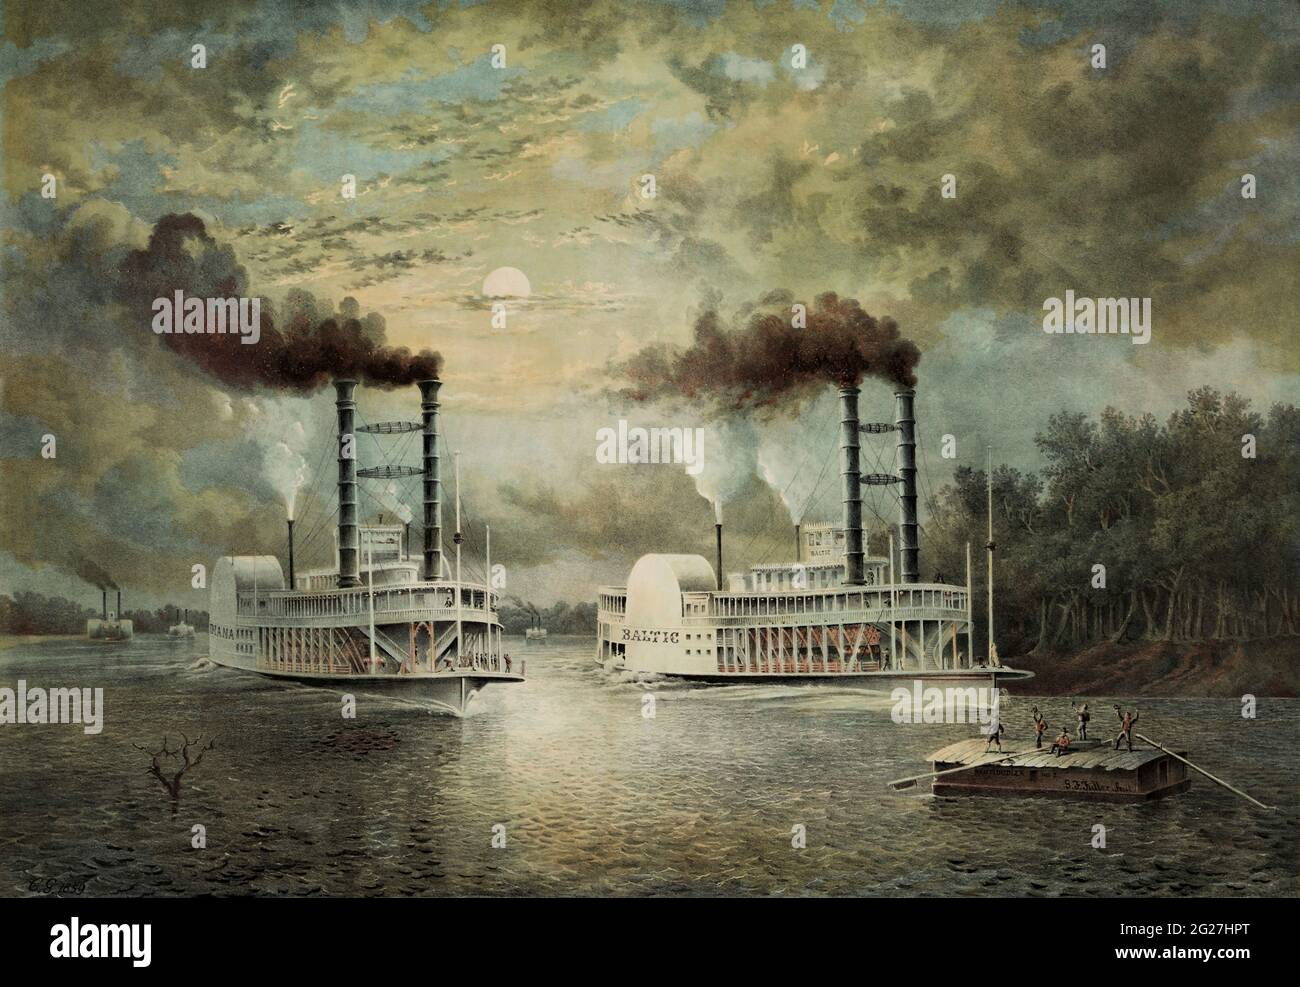 Zwei Dampfschiffe, nämlich die Baltic und Diana, beteiligten sich an einem Hals-zu-Kopf-Rennen auf dem Fluss. Stockfoto